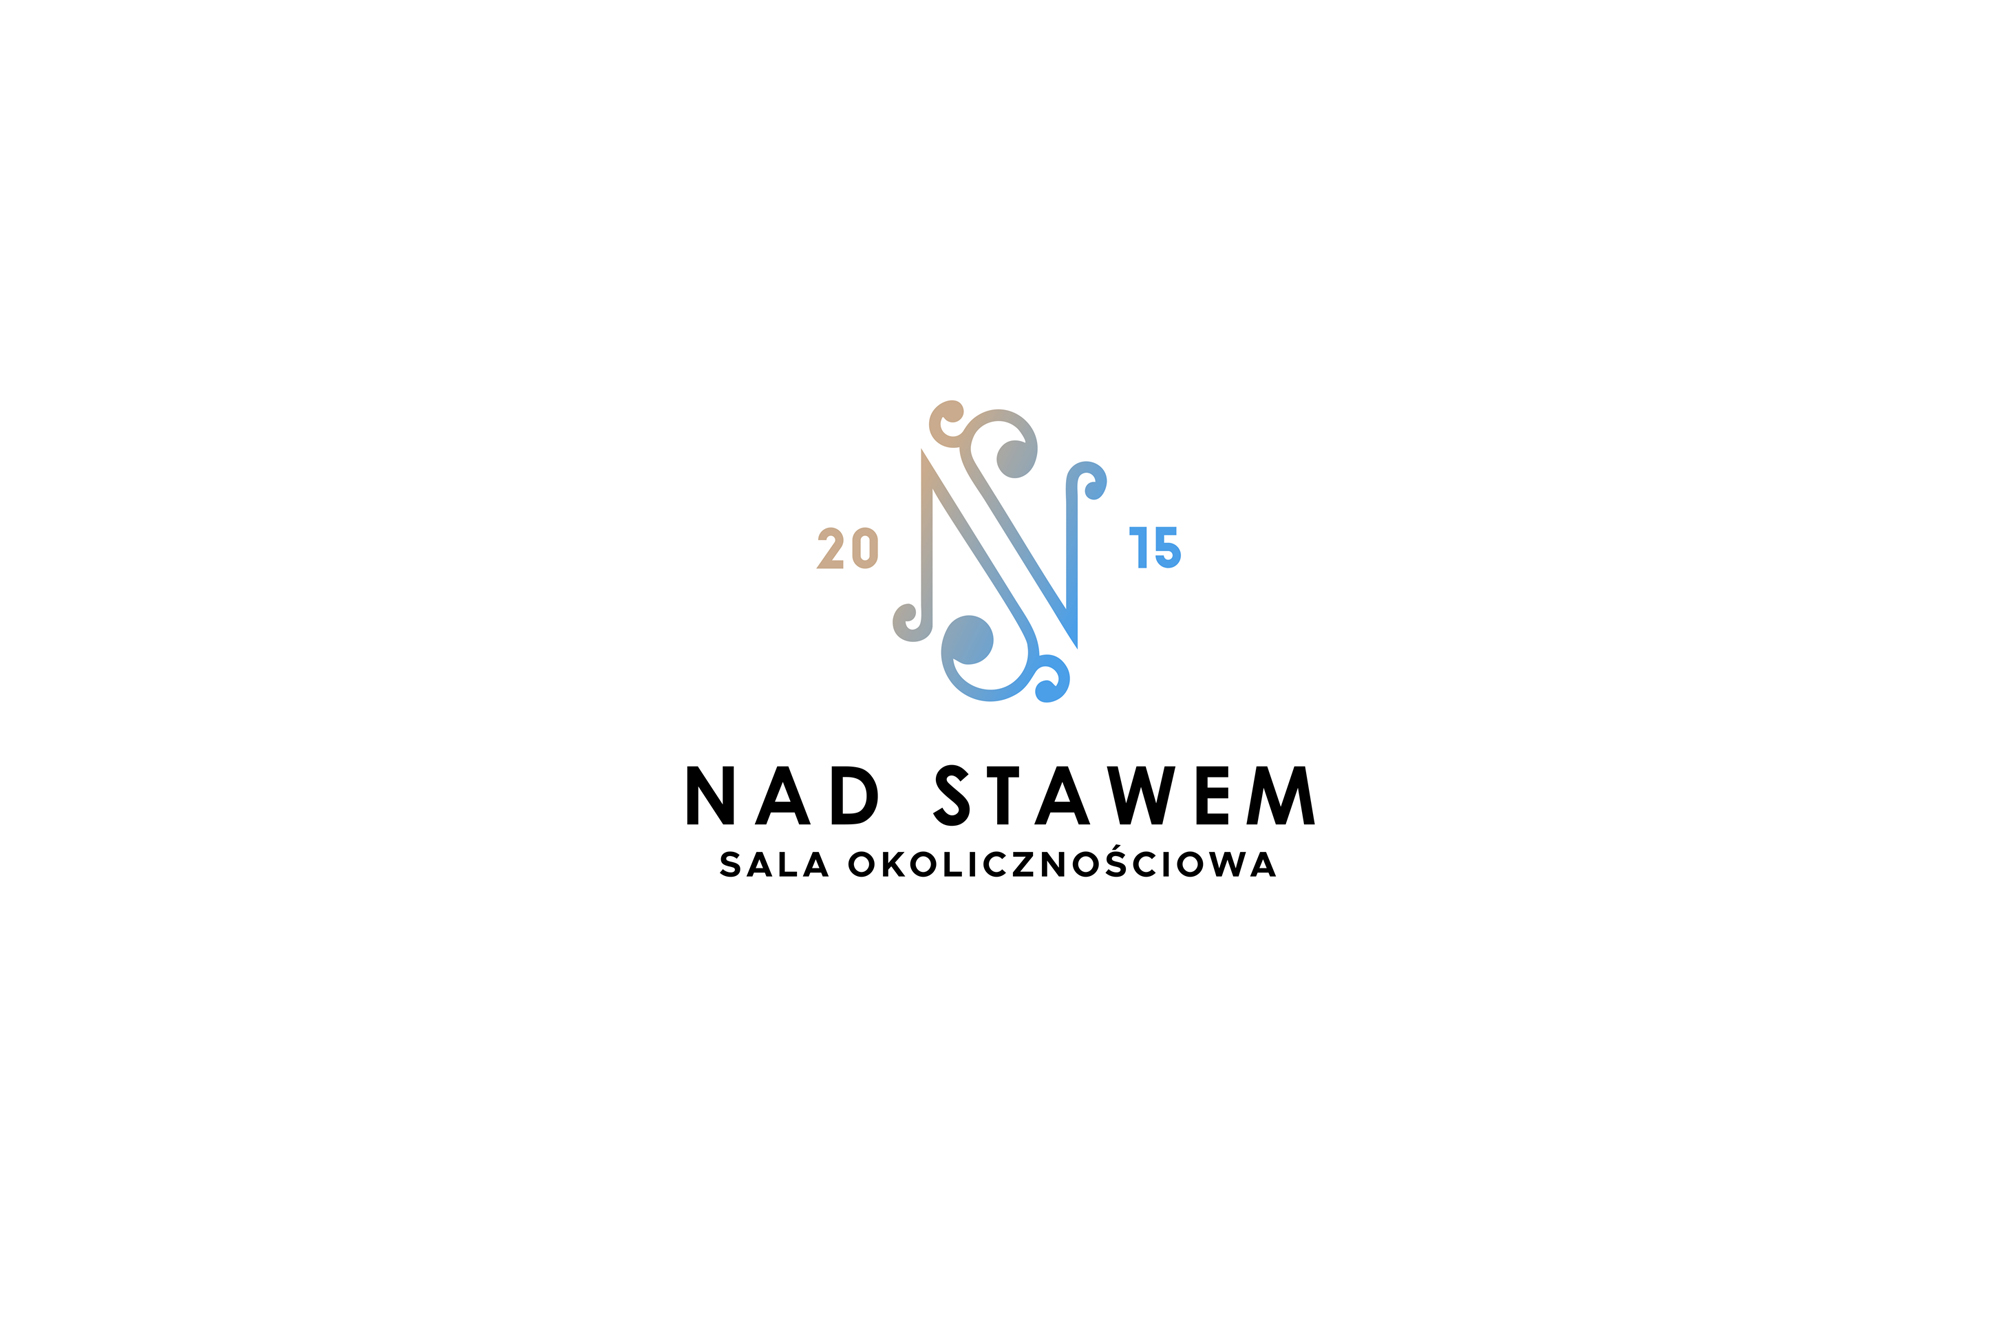 Sala Okolicznościowa Nad Stawem. Shadowart strona internetowa,logo, ulotki, wizytówki, sesja obiektu, sesja okolicznościowa.